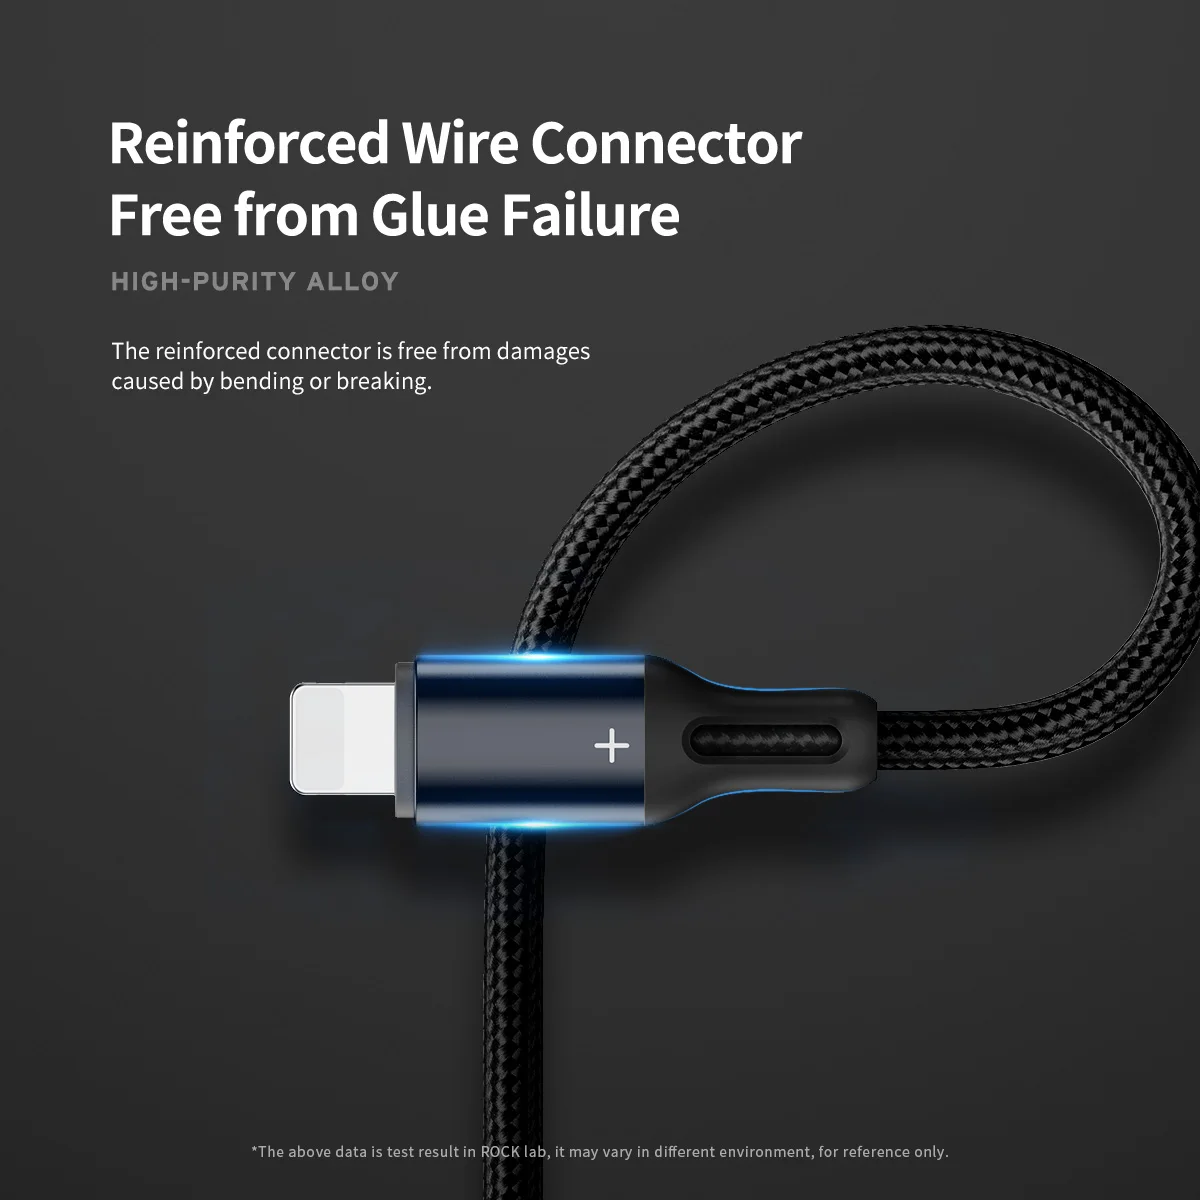 ROCK кабель для iPhone 11 Pro Max Xs Xr X 8 7 6 Plus 6s 5 s Plus ipad быстрое зарядное устройство USB кабели зарядный шнур для мобильного телефона